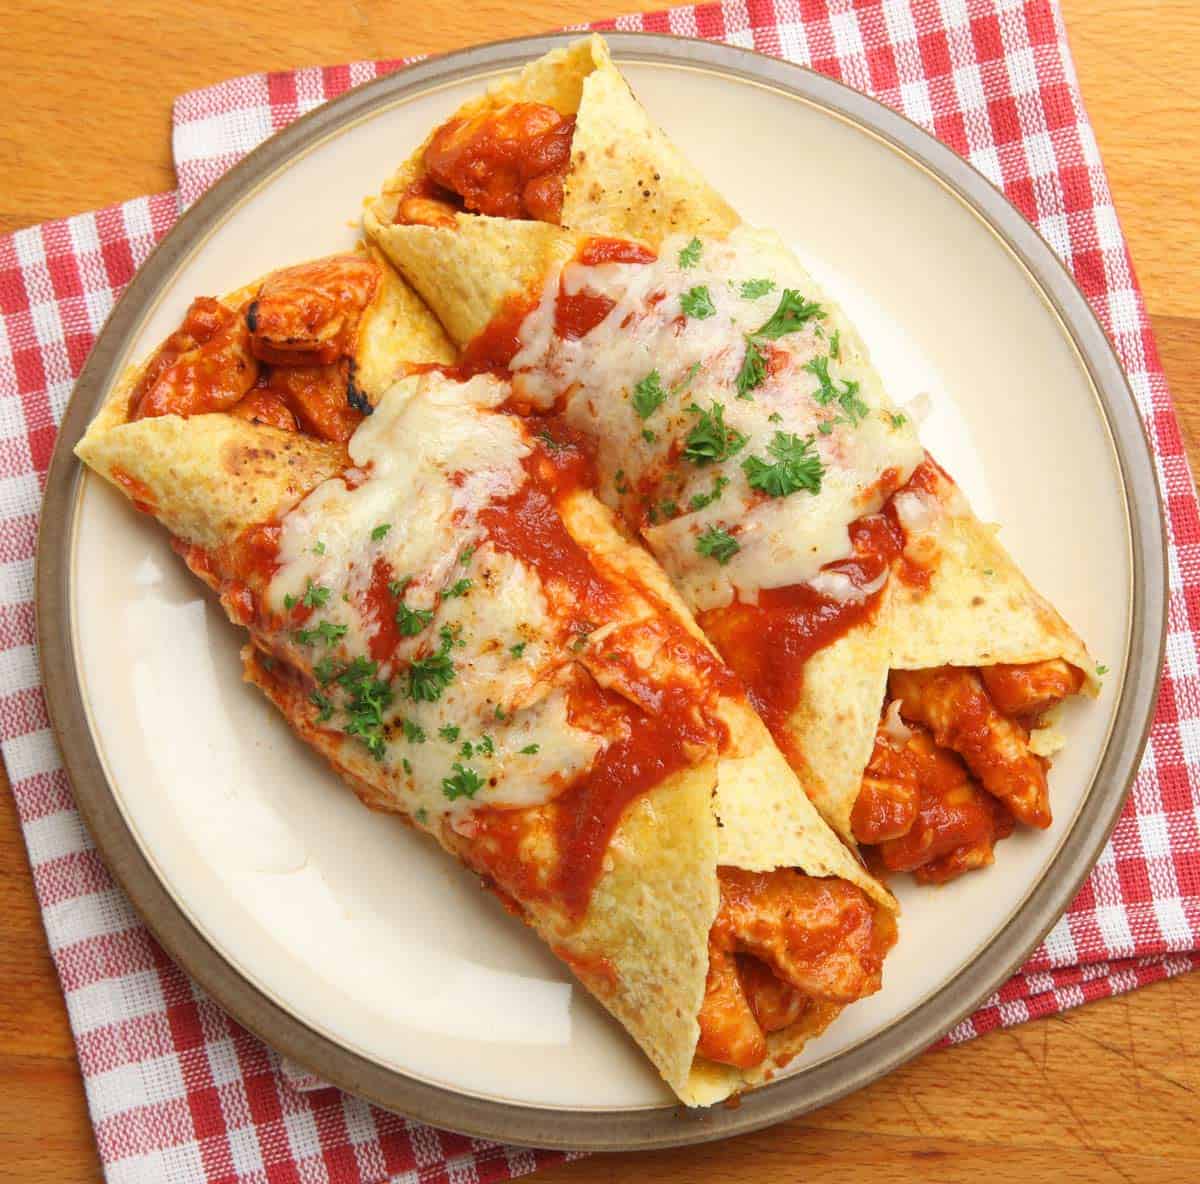 Esta Receta de Enchiladas de Pollo Queda Deliciosa y Es muy Fácil de Hacer